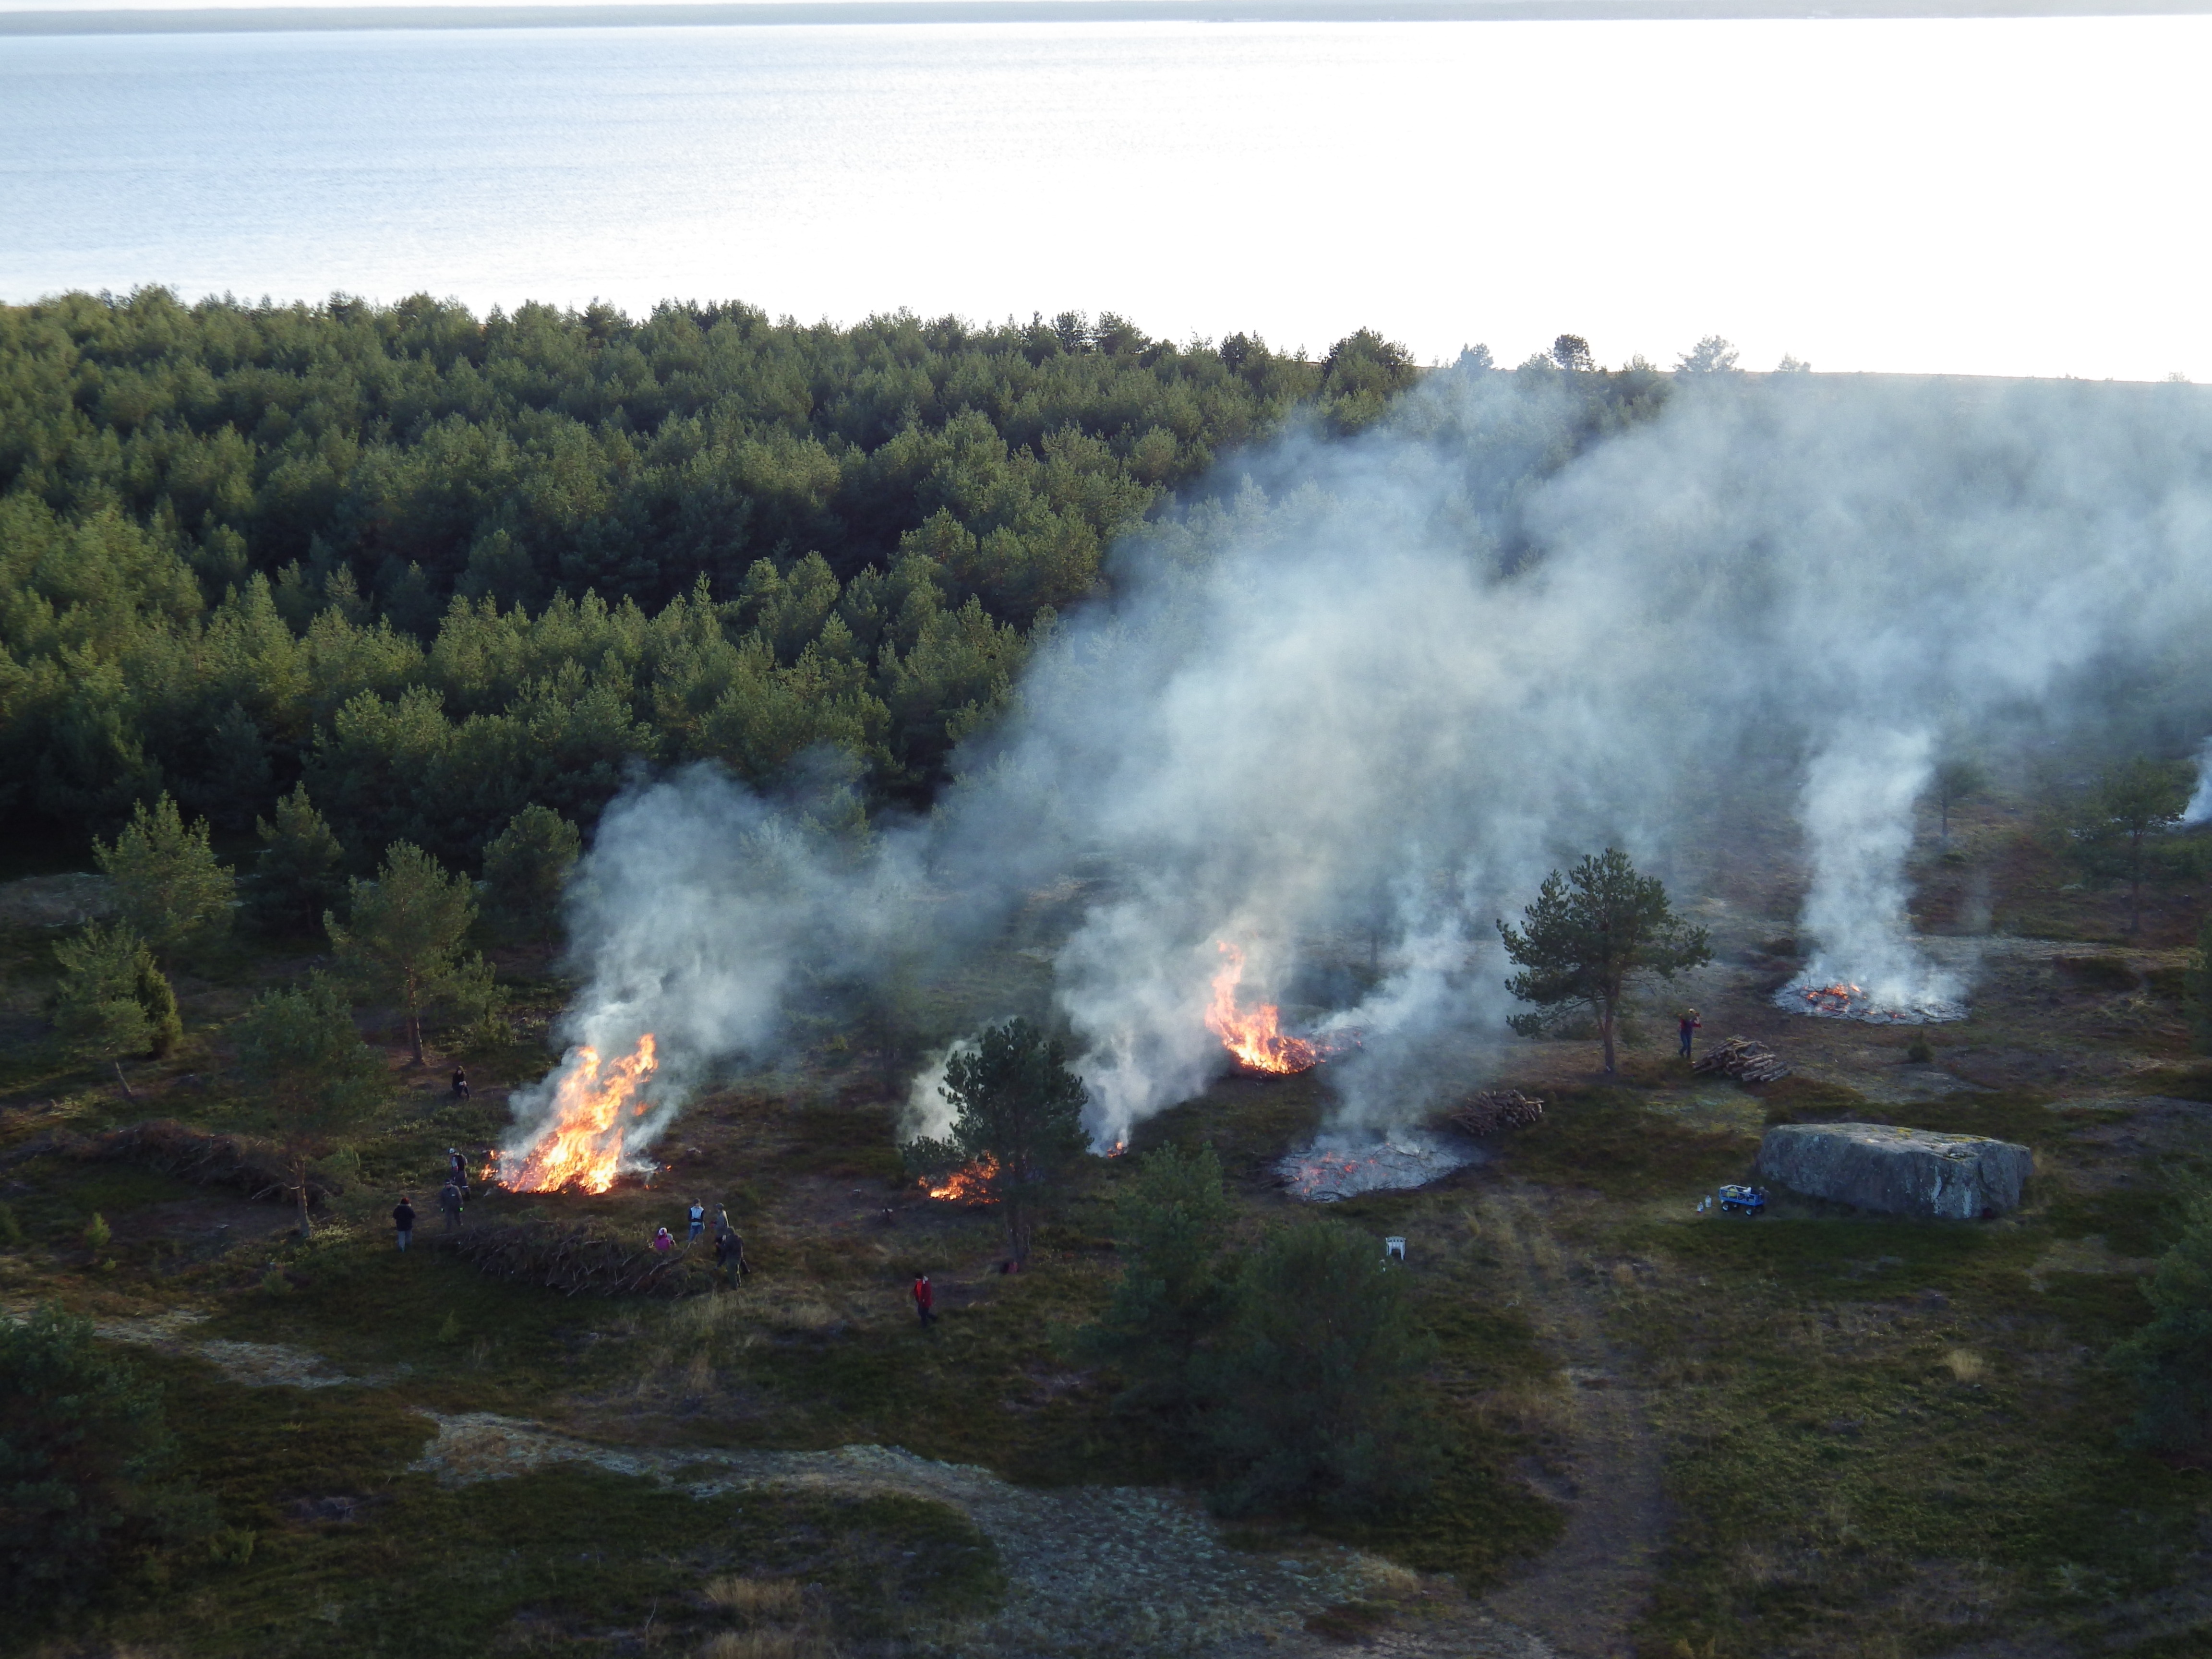 Sügisene oksahunnikute põletamine rändrahnu kõrval oleval talguplatsil 2014. aastal. Sellist ülevaatliku pilti kõrgusest enam teha ei saa, sest … (Foto: Eero Väin).